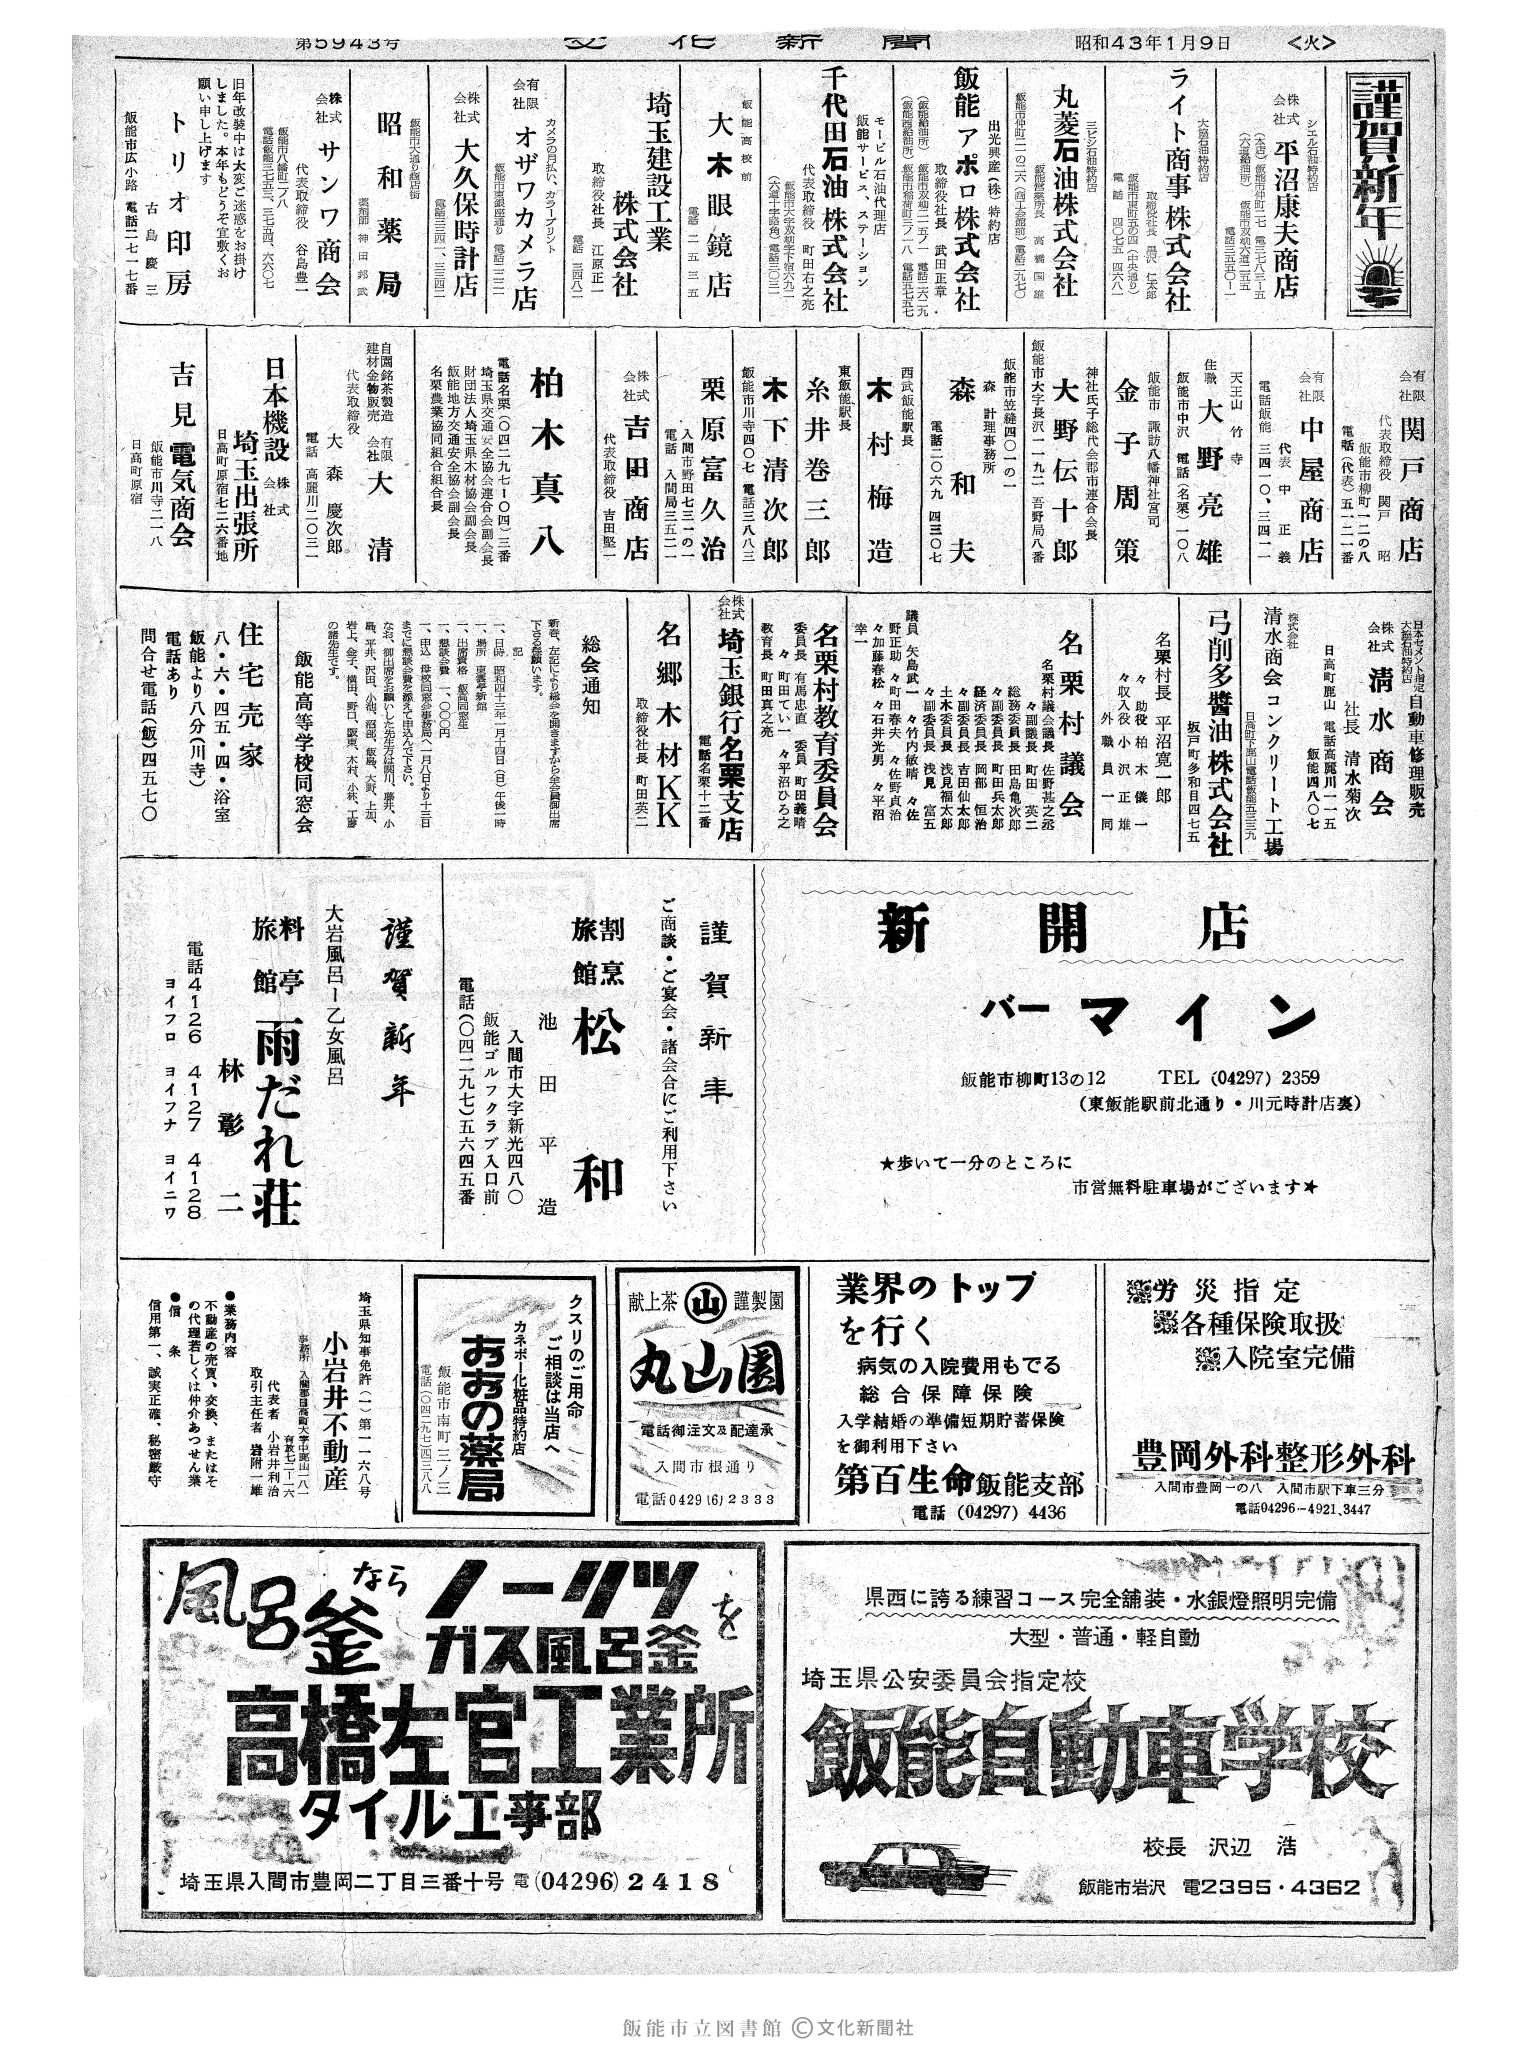 昭和43年1月9日2面 (第5943号) 広告ページ